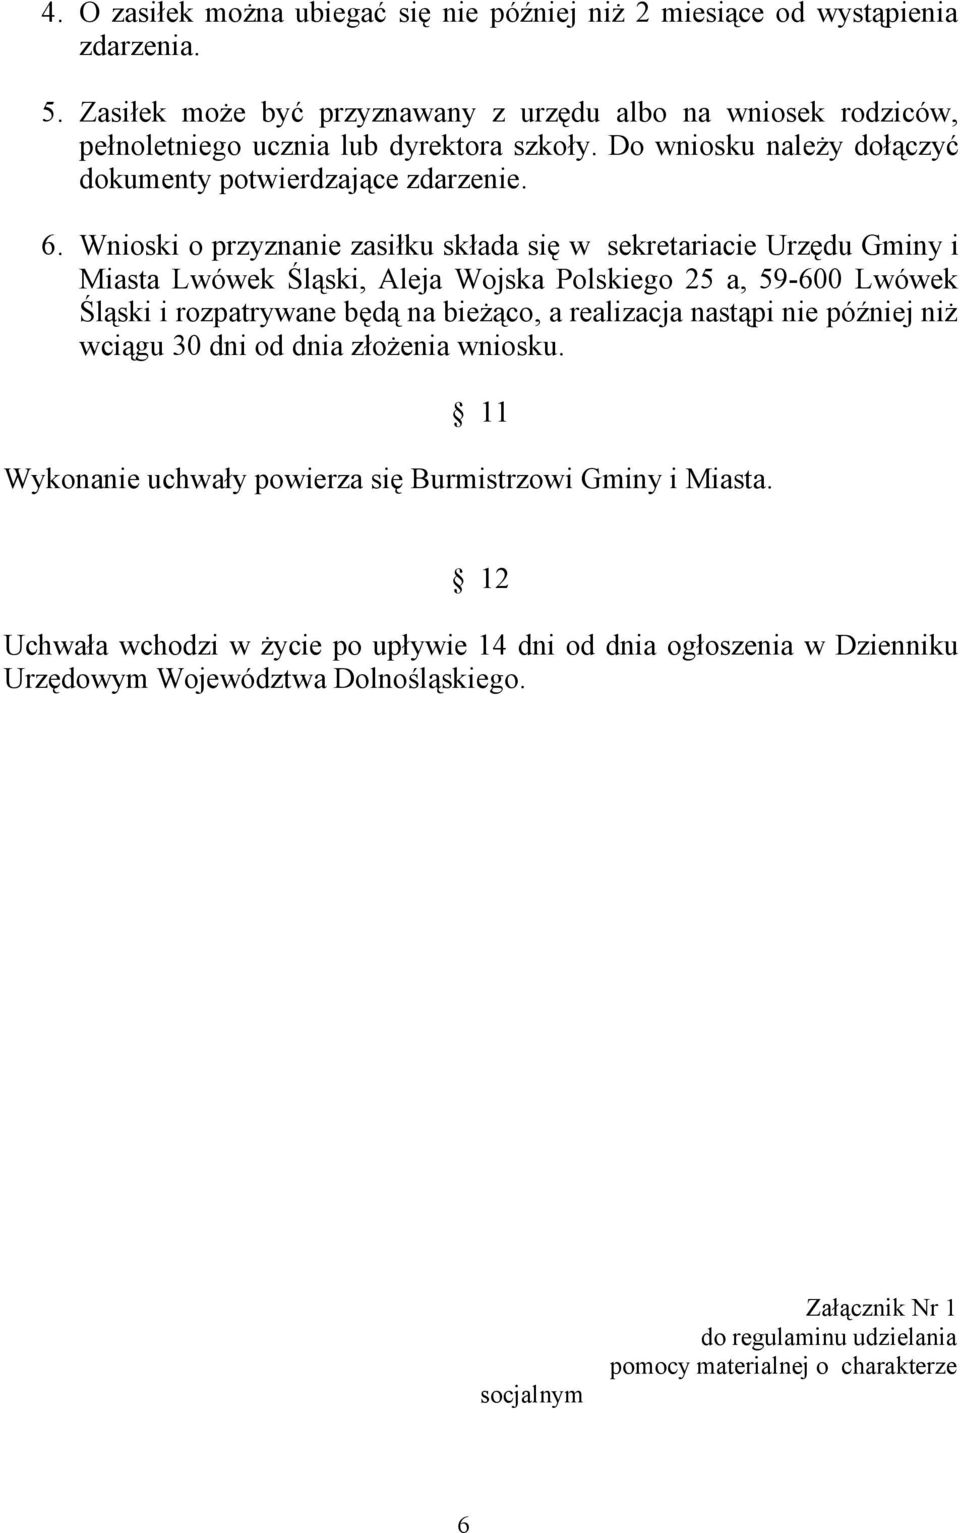 Wnioski o przyznanie zasiłku składa się w sekretariacie Urzędu Gminy i Miasta Lwówek Śląski, Aleja Wojska Polskiego 25 a, 59-600 Lwówek Śląski i rozpatrywane będą na bieżąco, a realizacja